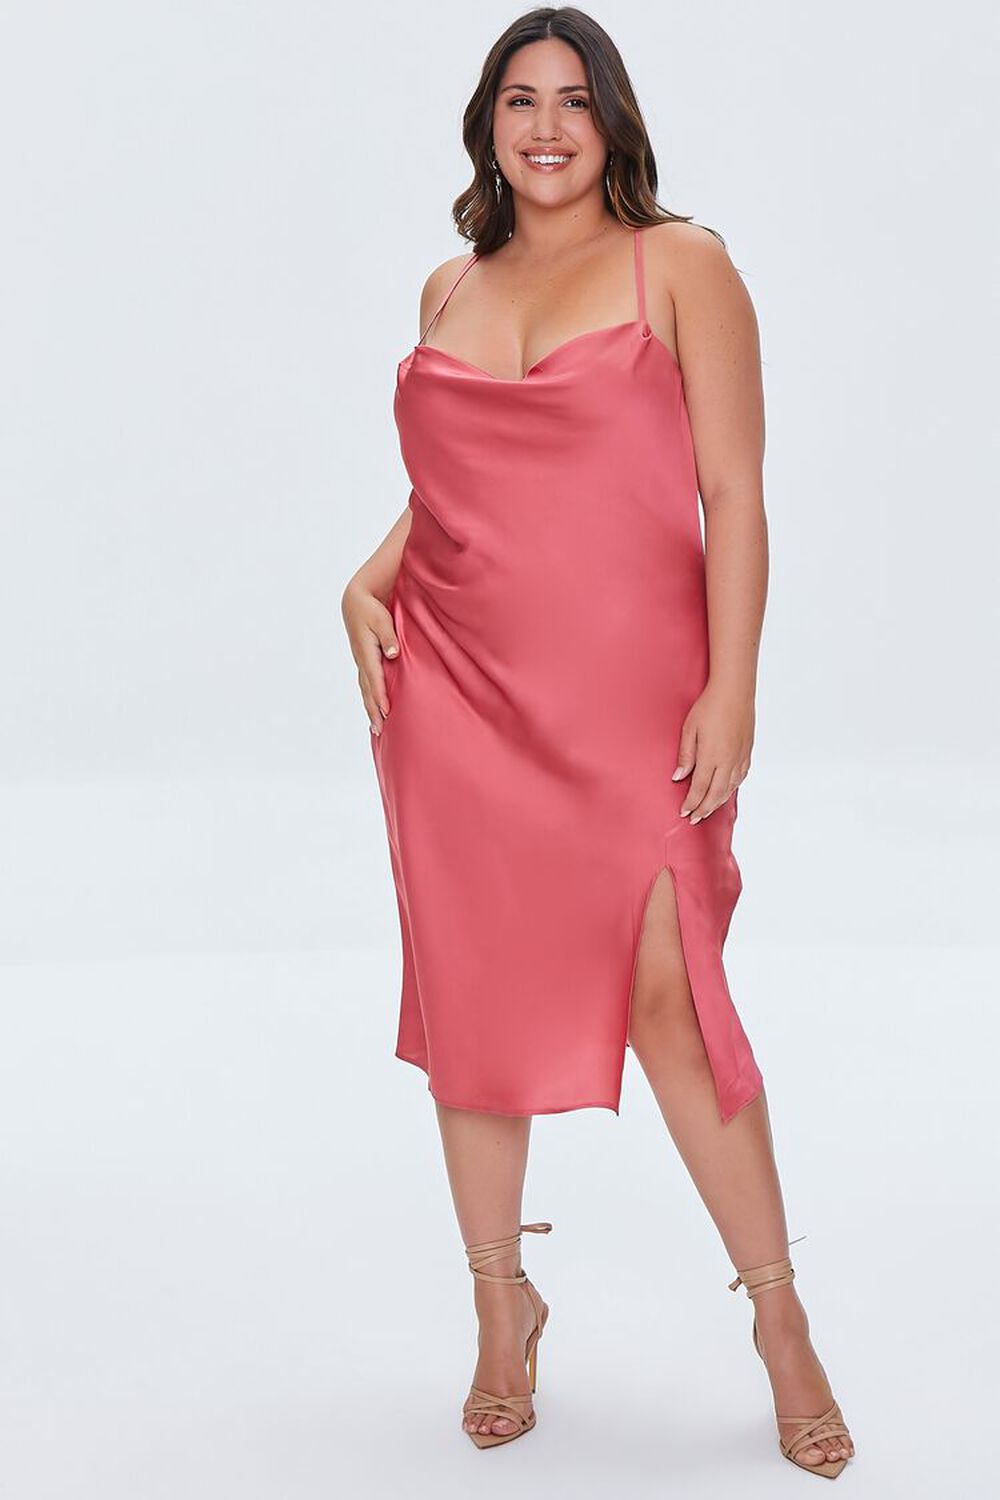 ROSE PETAL Plus Size Satin Cami Dress, image 1